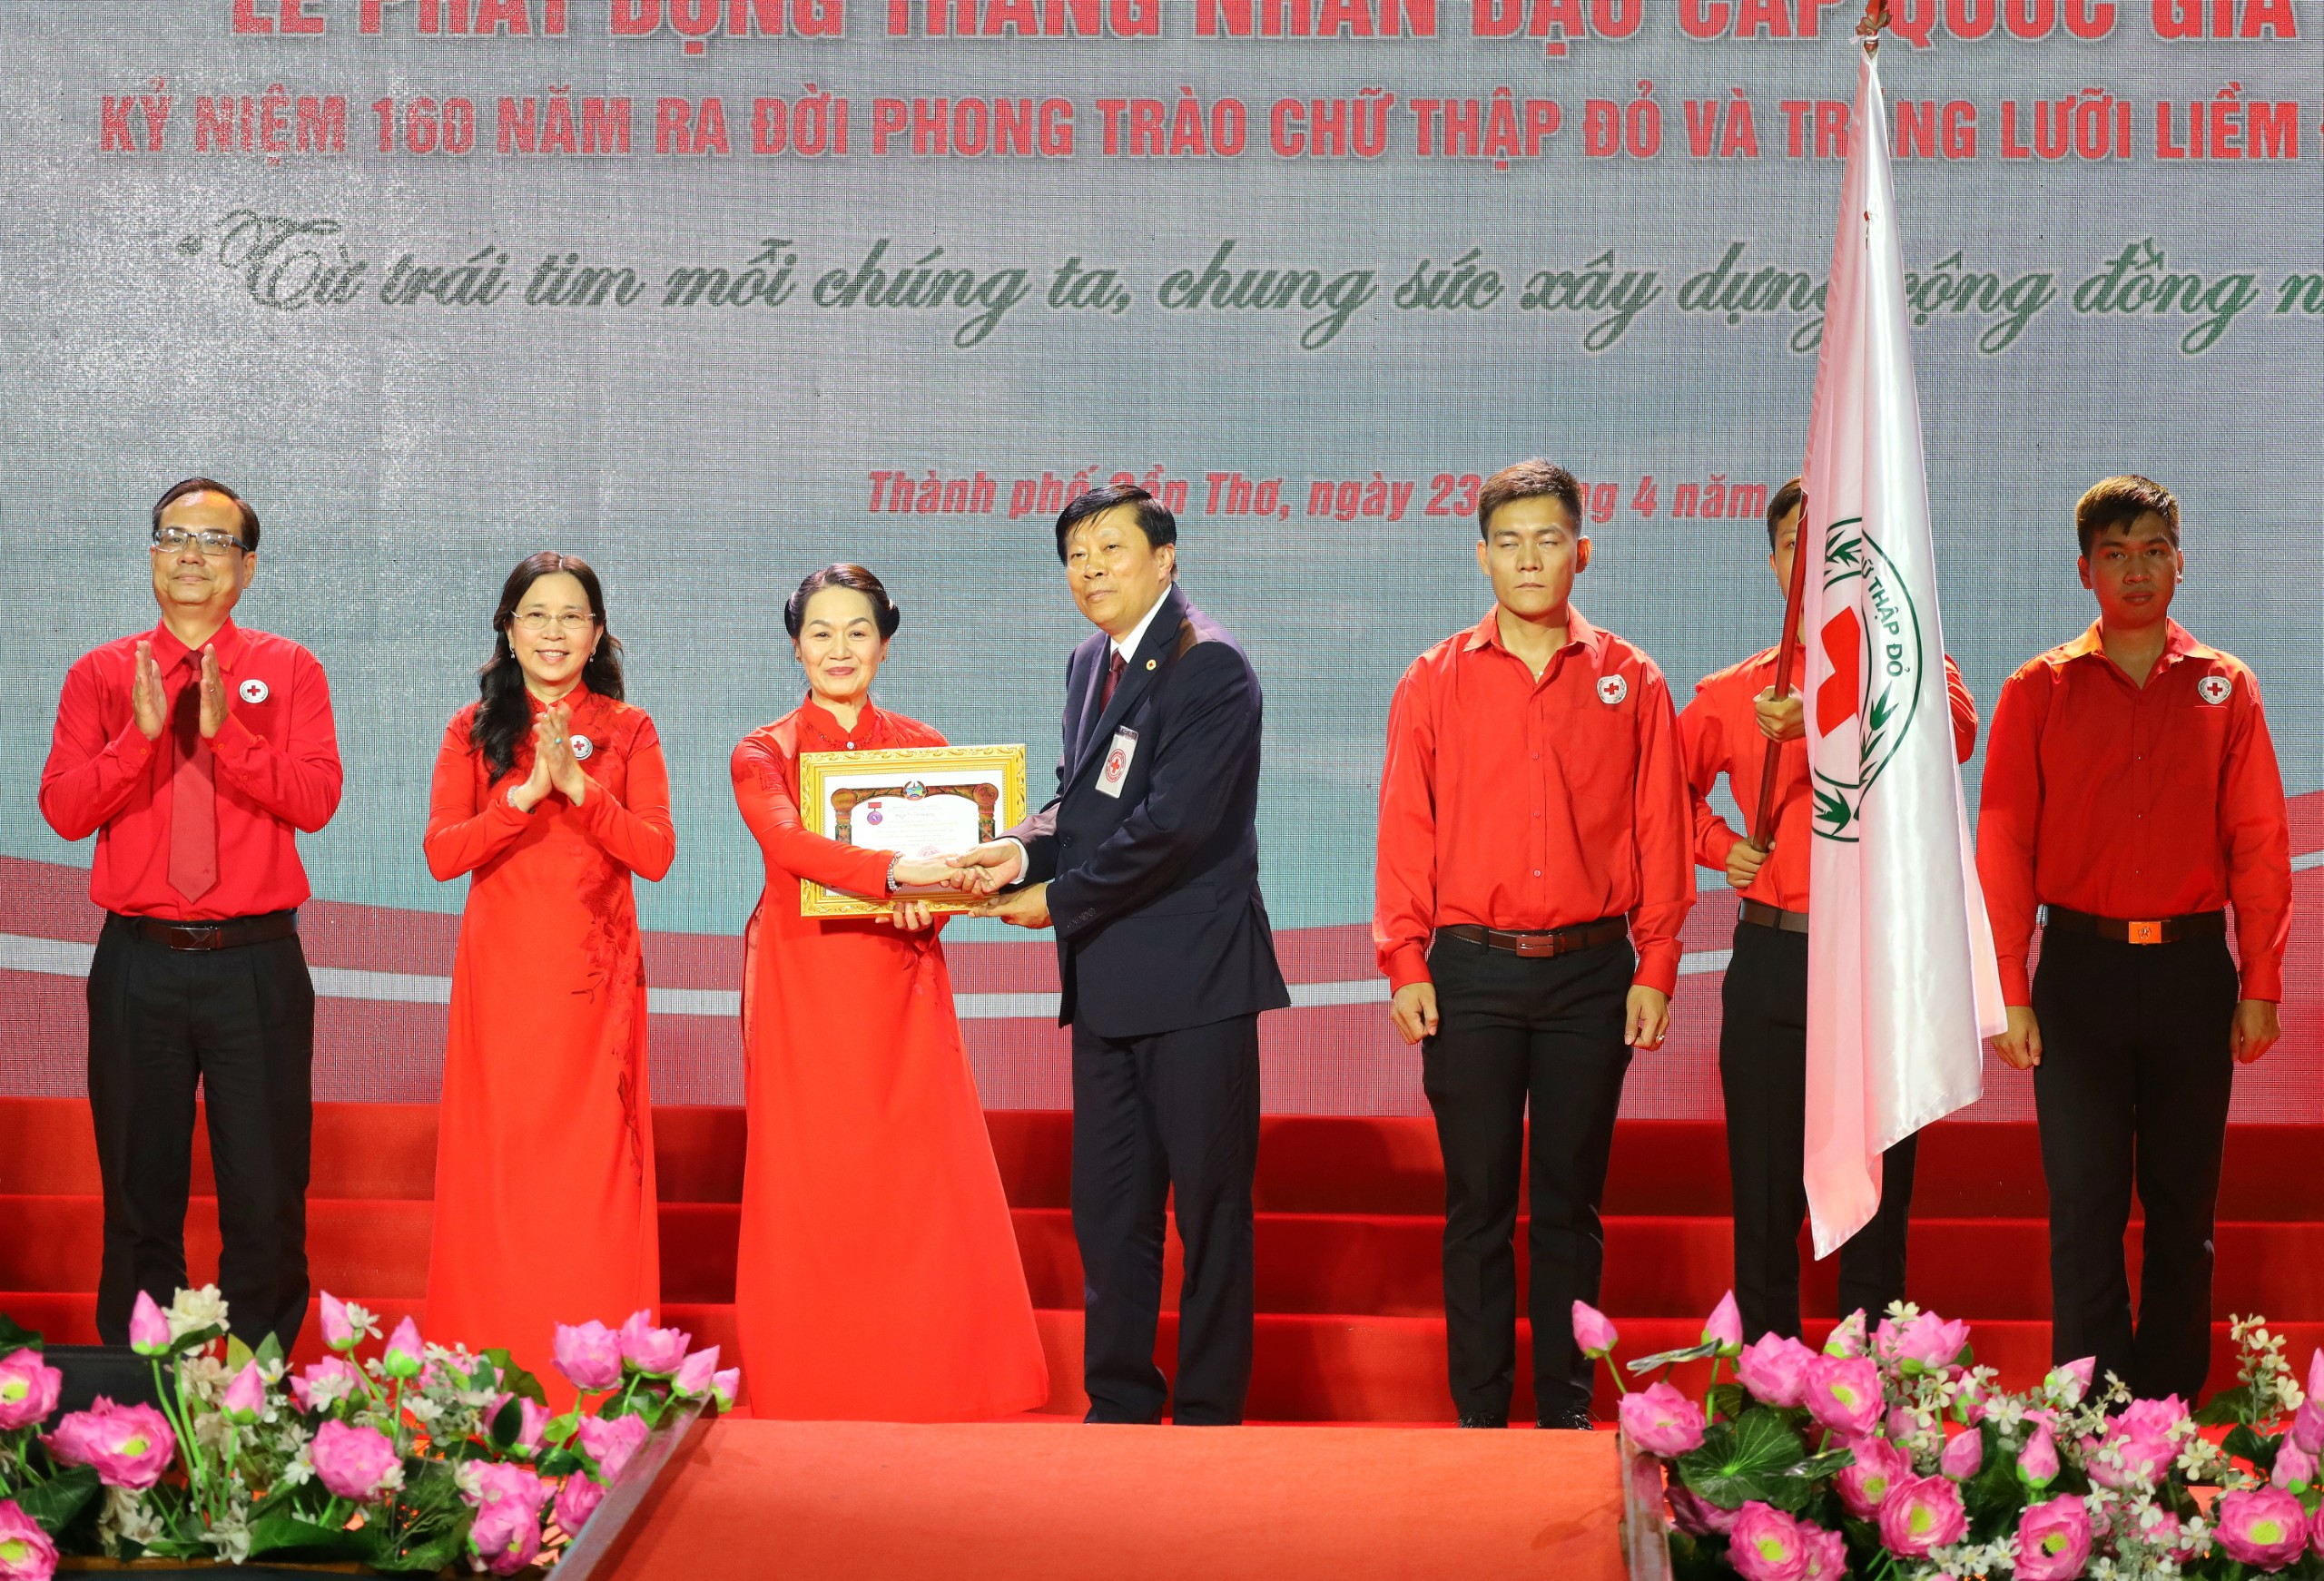 Ông Phouthone - Chủ tịch Hội Chữ Thập đỏ Lào trao tặng phần thưởng cao quý của Nhà nước Cộng hòa dân chủ nhân dân Lào - Huân chương Hữu nghị cho Trung ương Hội Chữ thập đỏ Việt Nam.